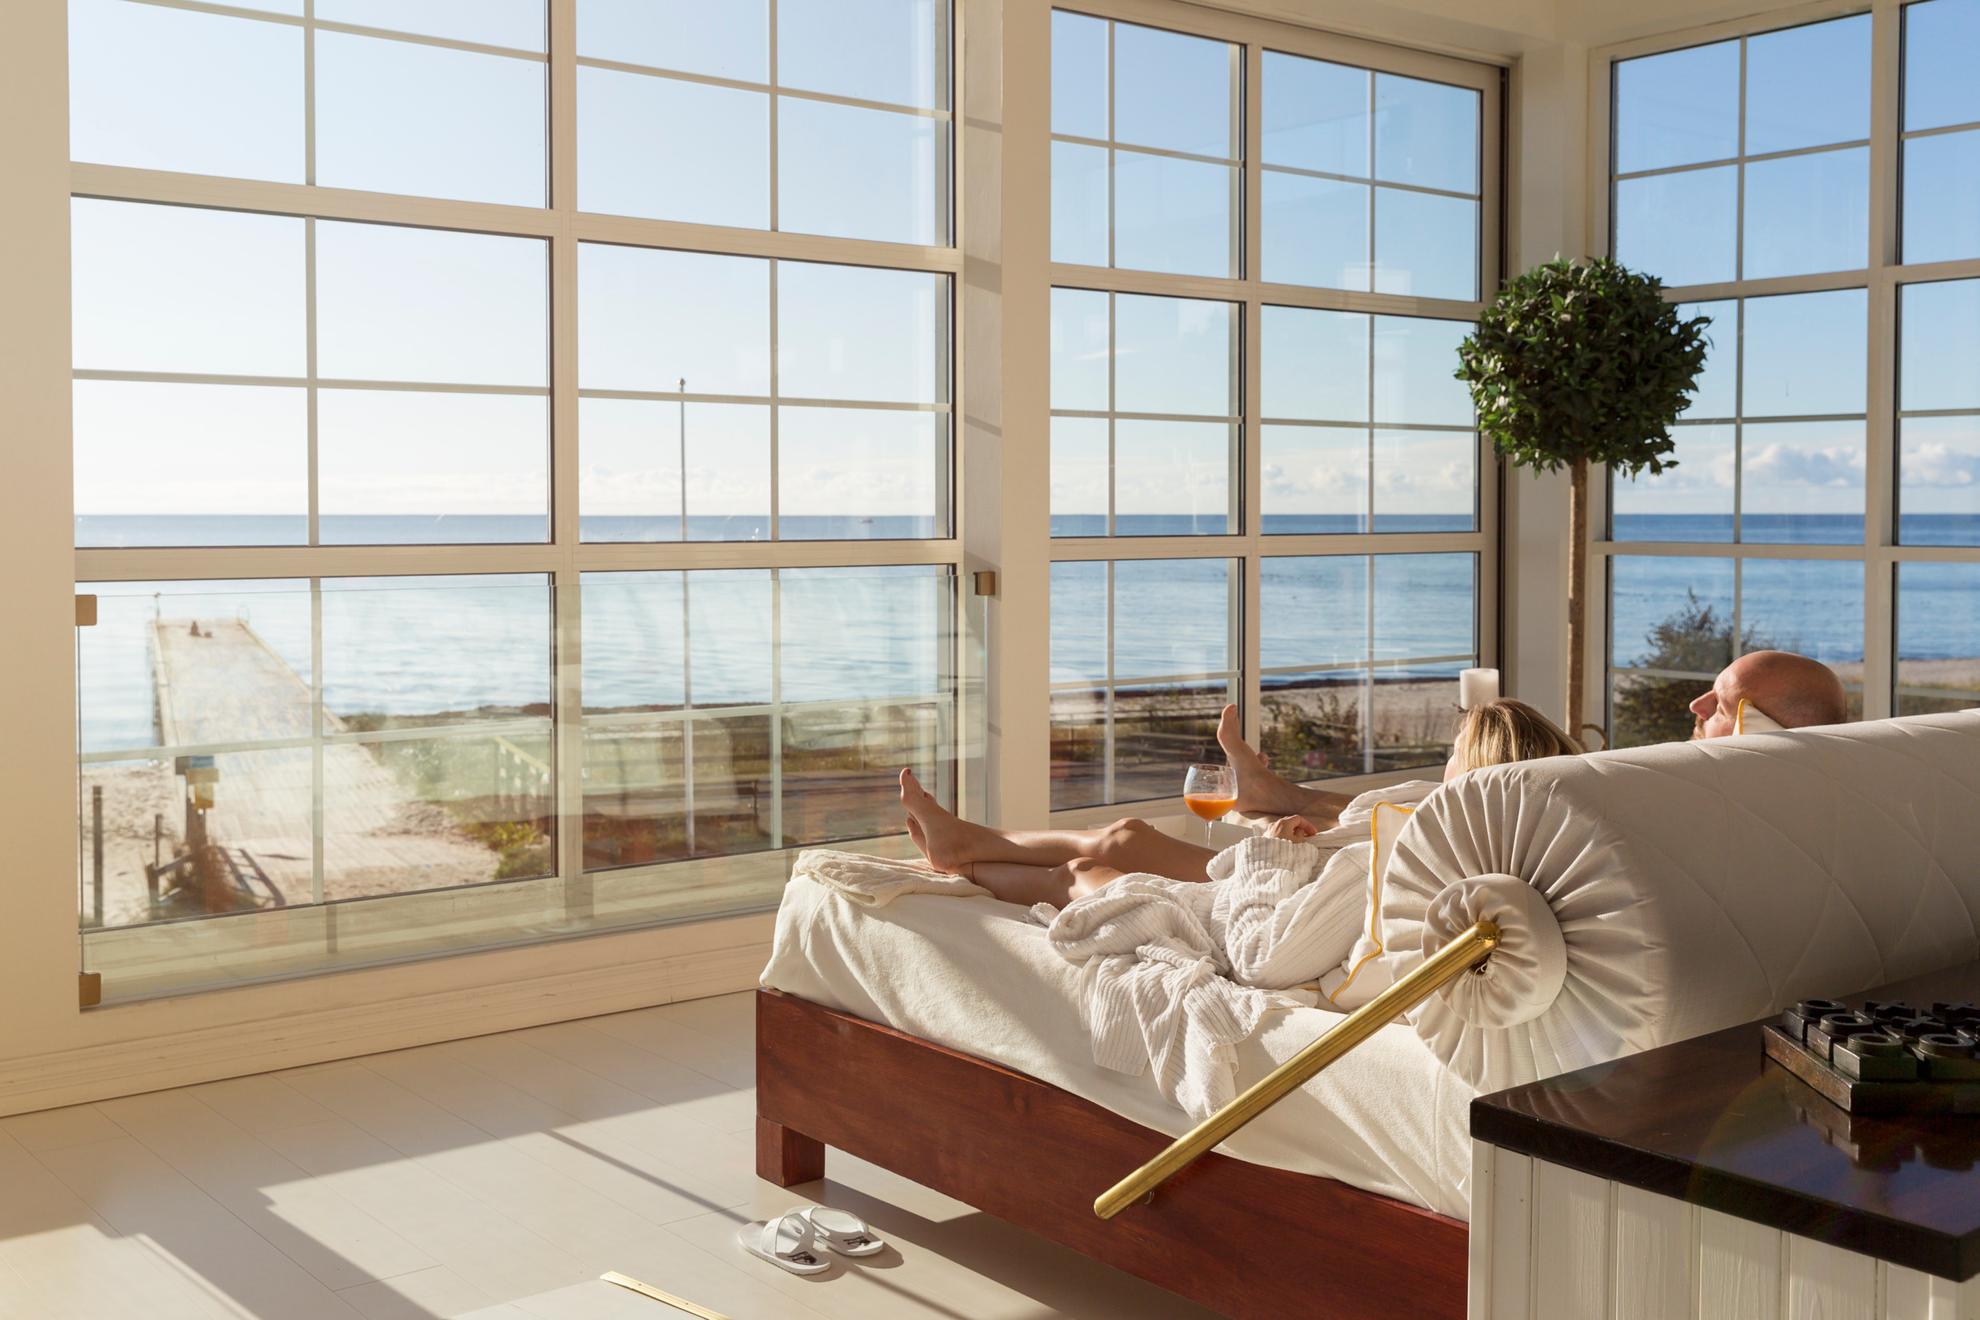 Ein Paar liegt in einem großen Bett neben großen Fenstern mit Blick auf den Strand und das Meer.